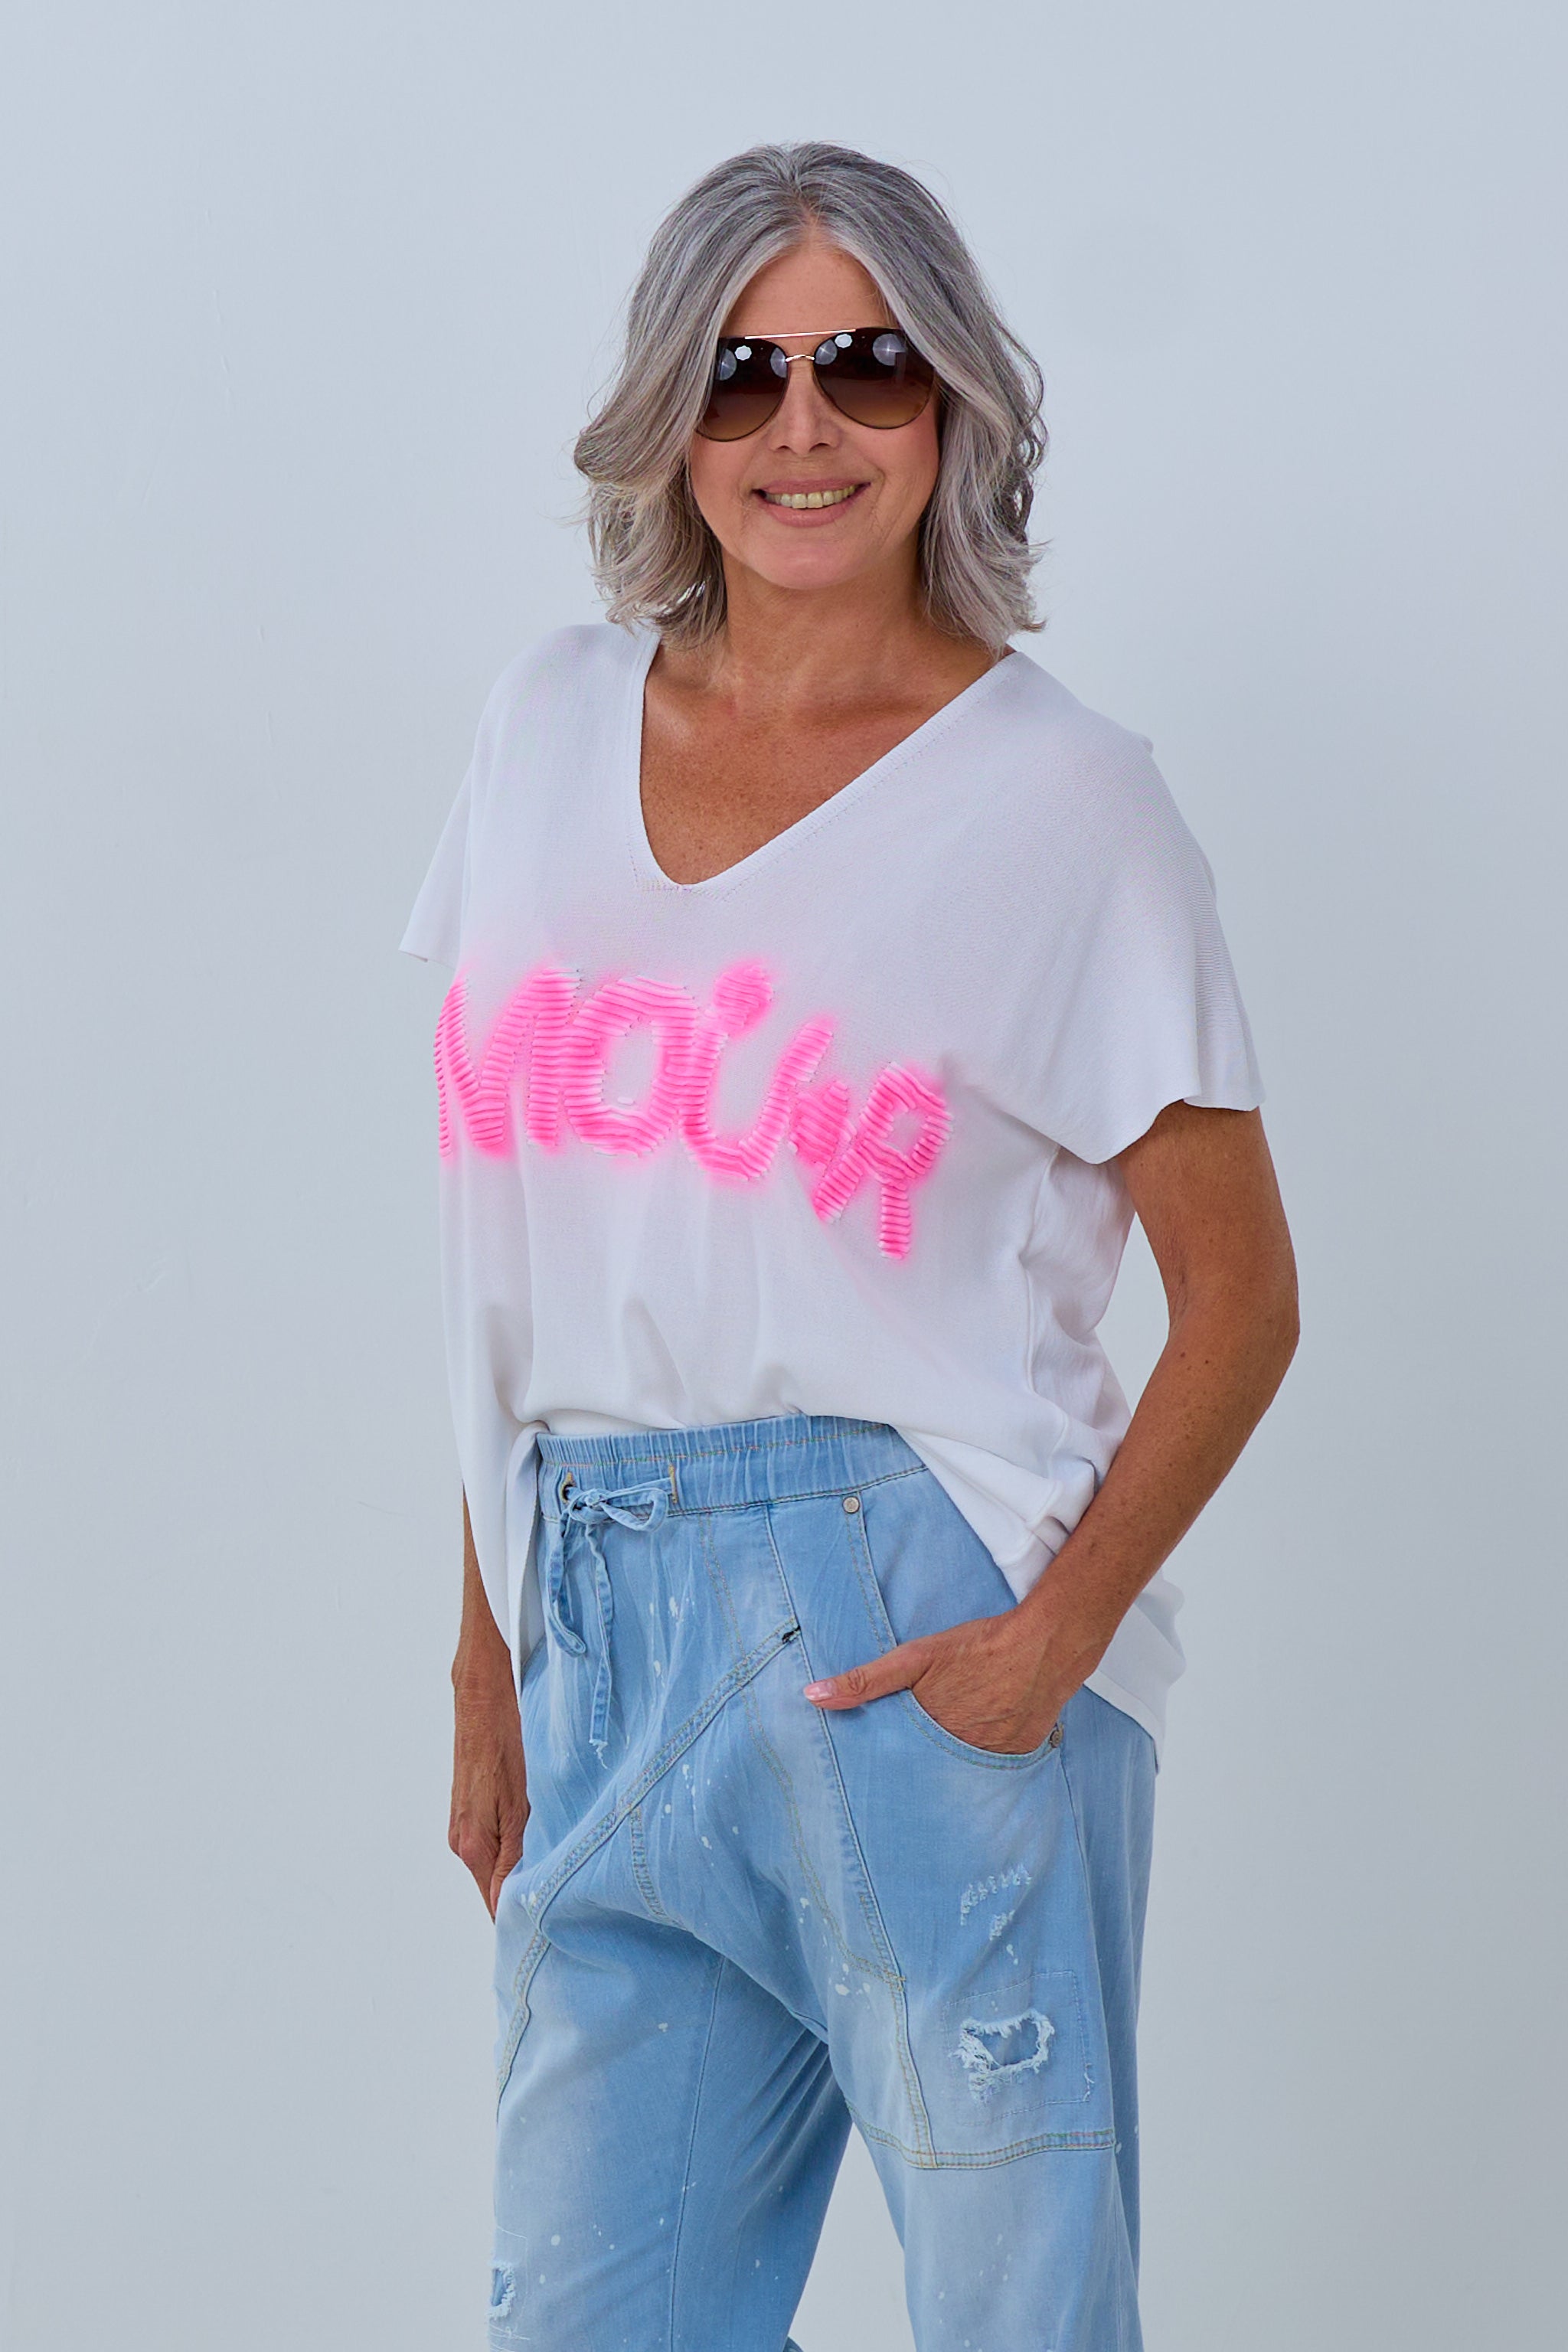 Kurzarm Shirt mit Amour-Schriftzug, weiß-pink von Trends & Lifestyle